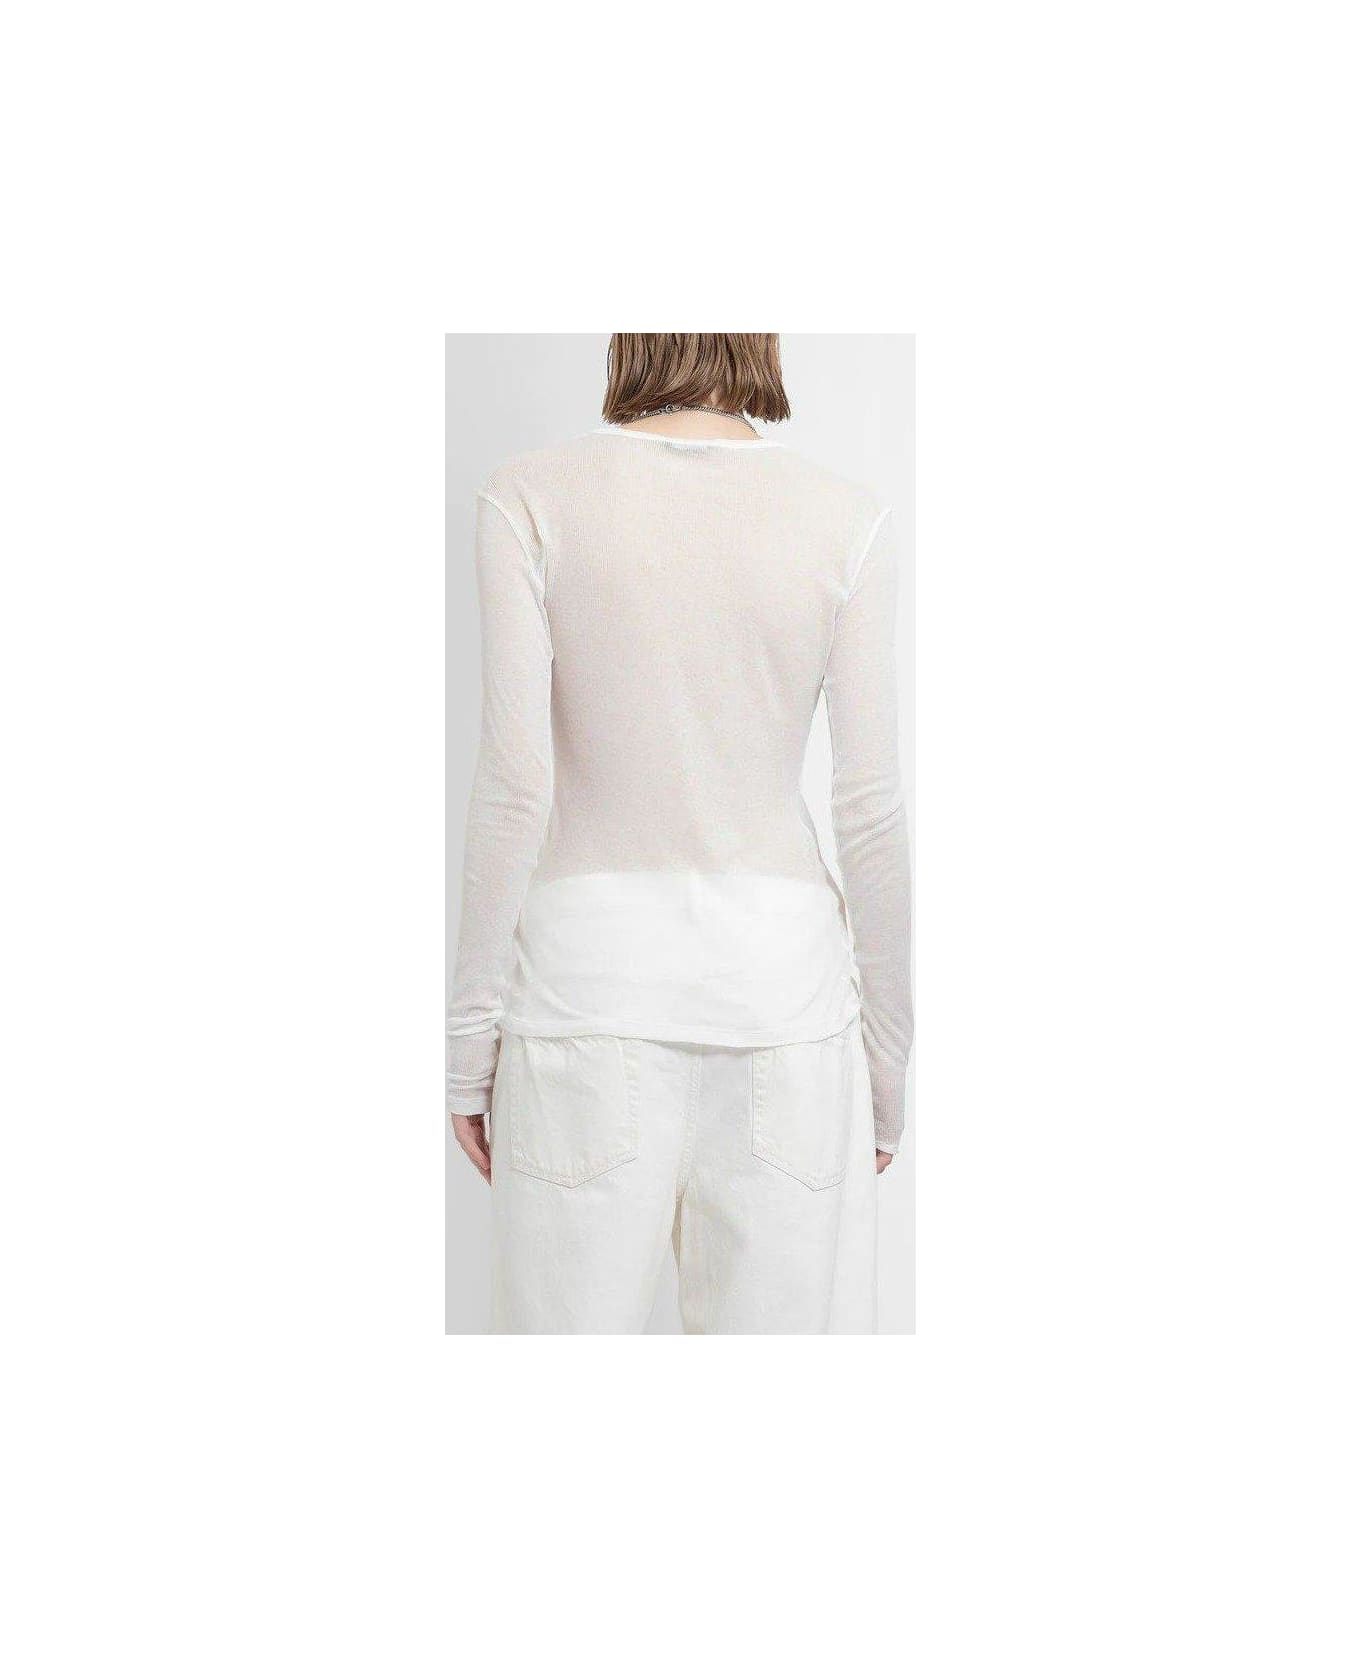 Ann Demeulemeester Fiene Long Sleeve T-shirt - NATURAL WHITE Tシャツ